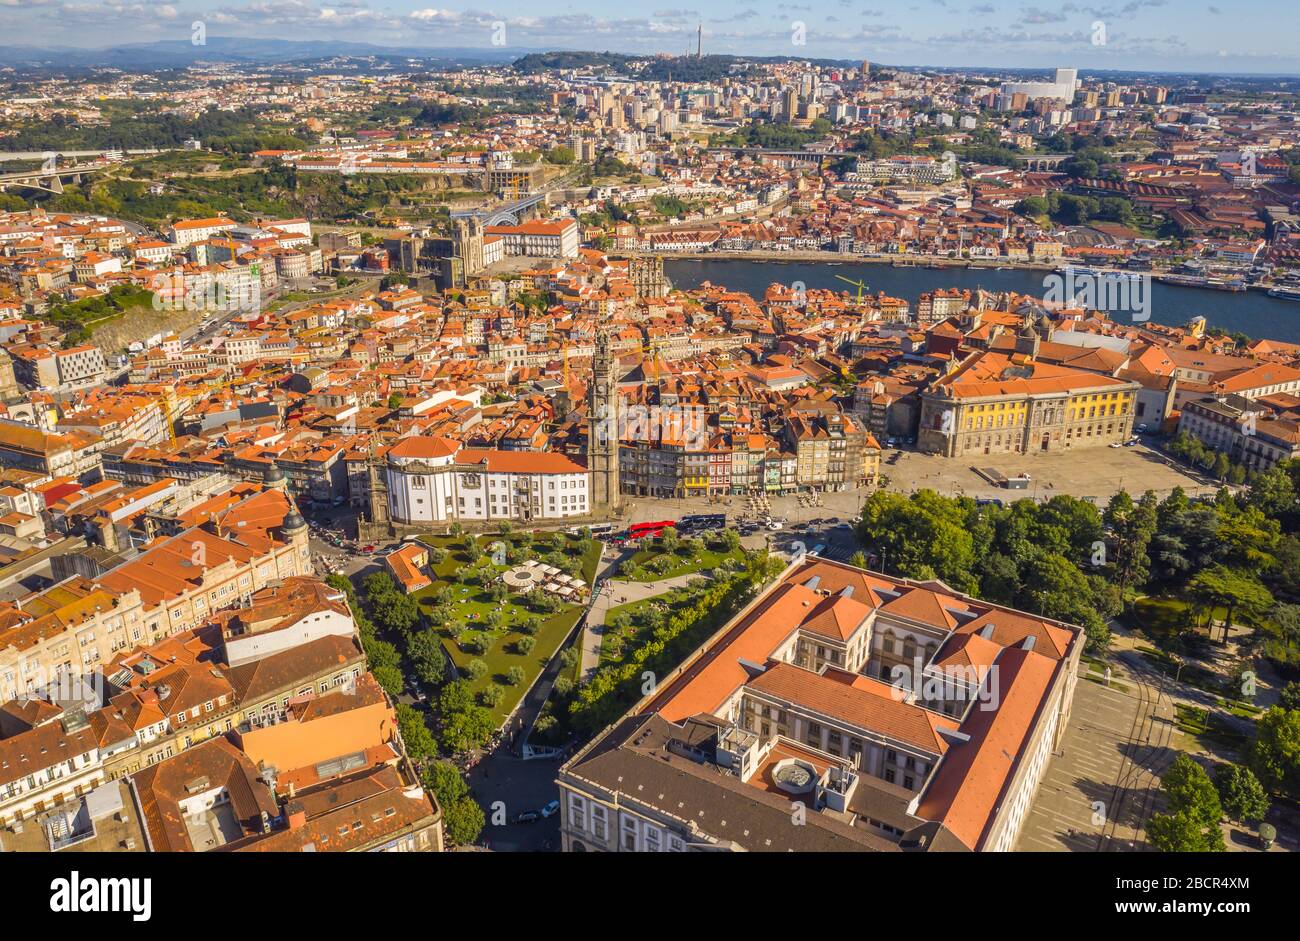 Porto au Portugal vue sur la ville, vue aérienne sur la drone Banque D'Images